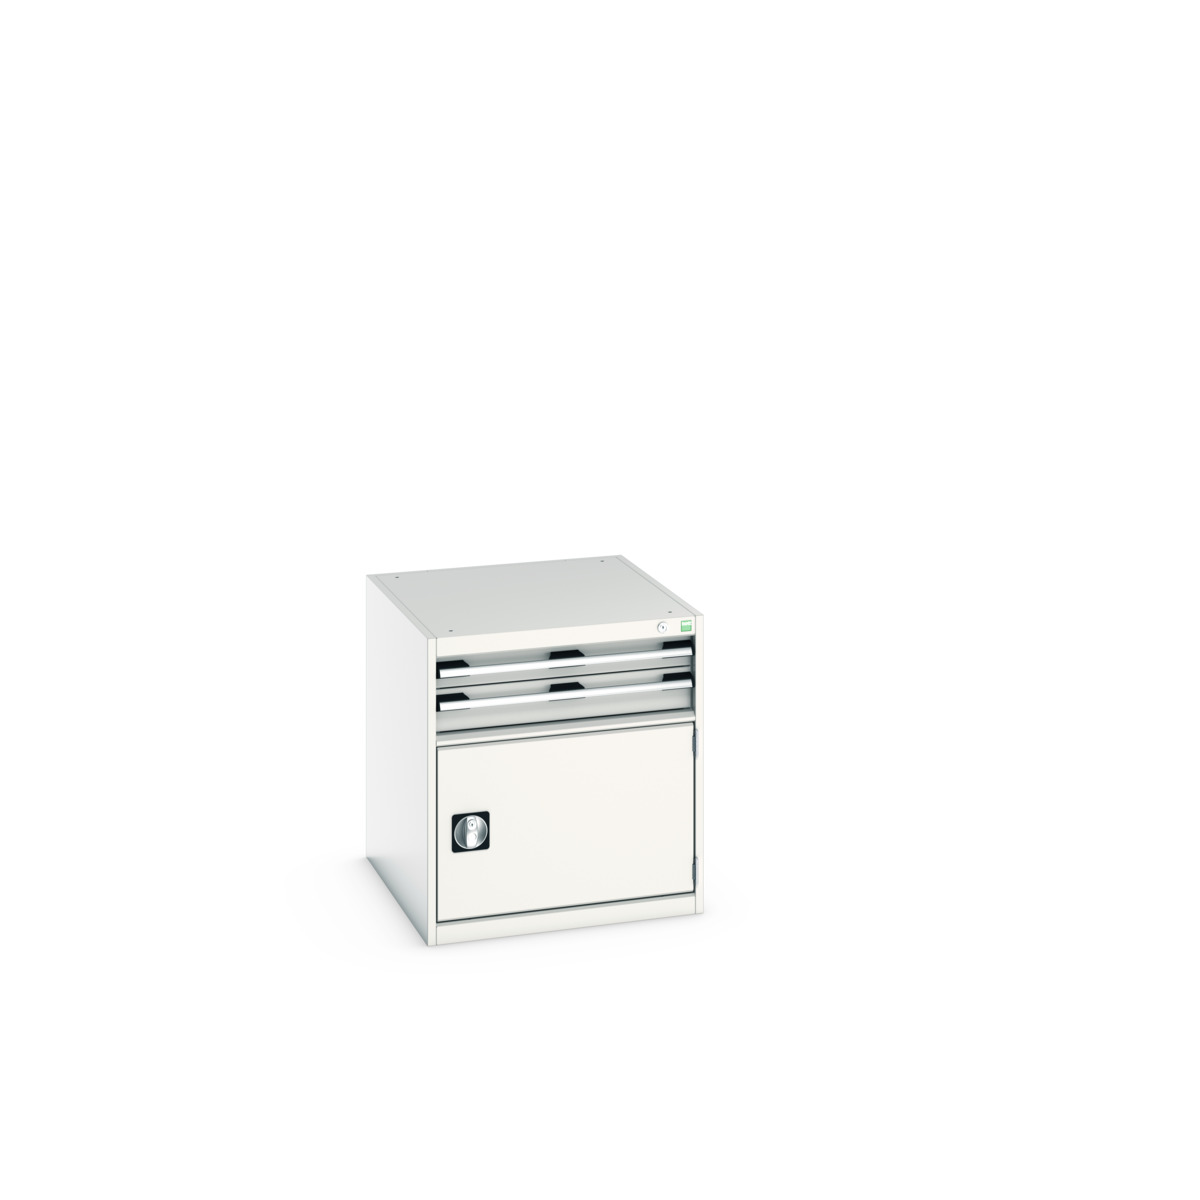 40027001.16V - cubio drawer-door cabinet